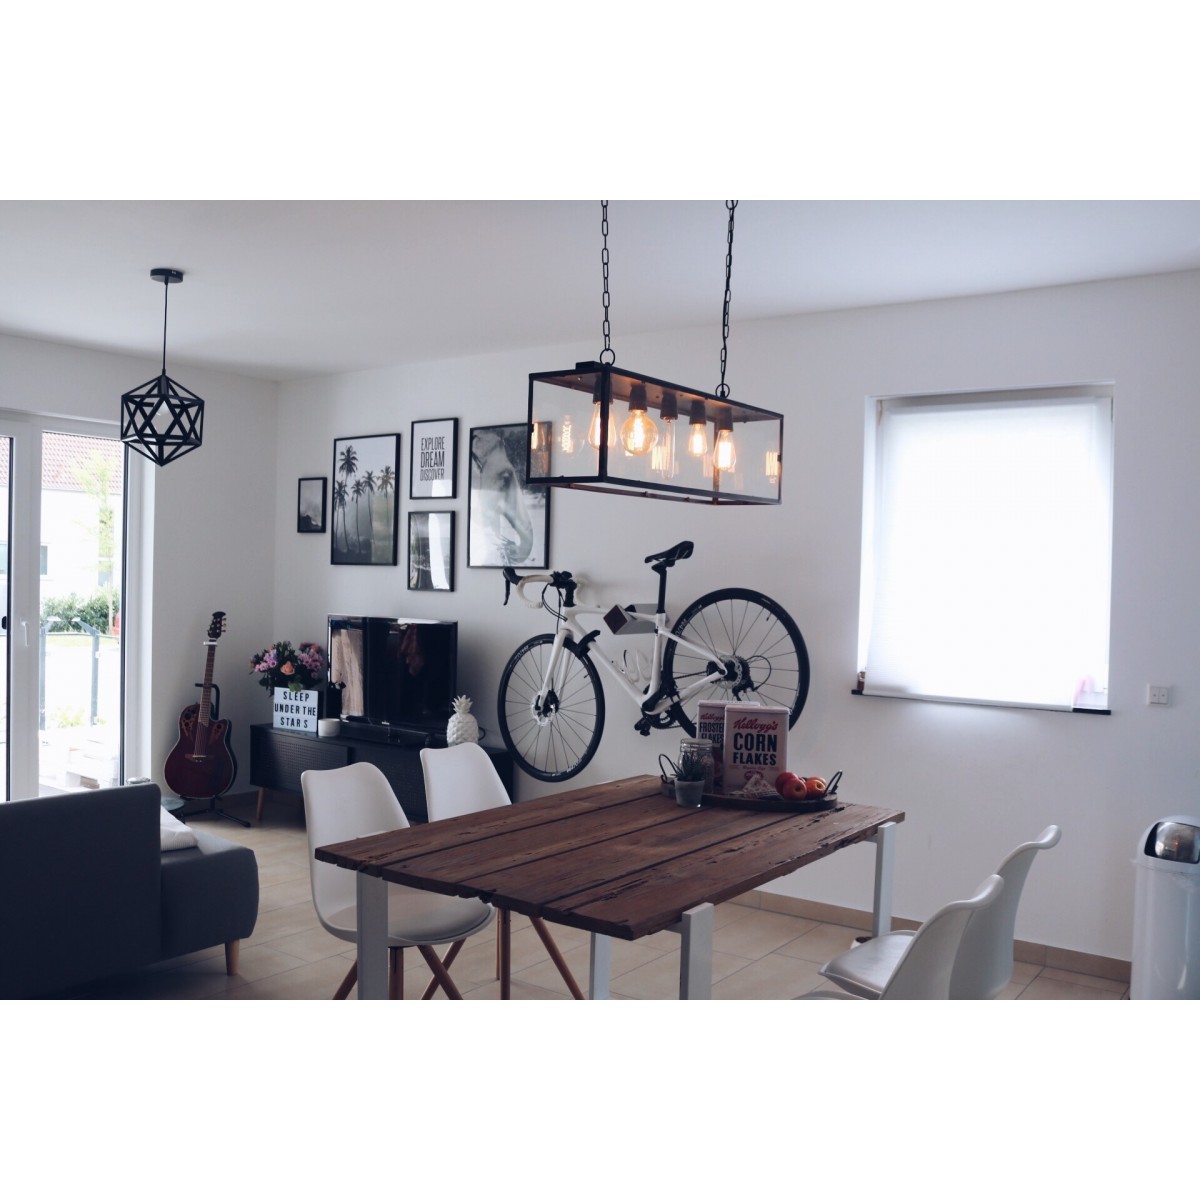 Stilvolle Design Fahrrad Wandhalterung | PARAX® D-RACK | für Rennrad, Hardtail, Cityrad & Tourenrad | Silber-Schwarz mit Oliven Holz